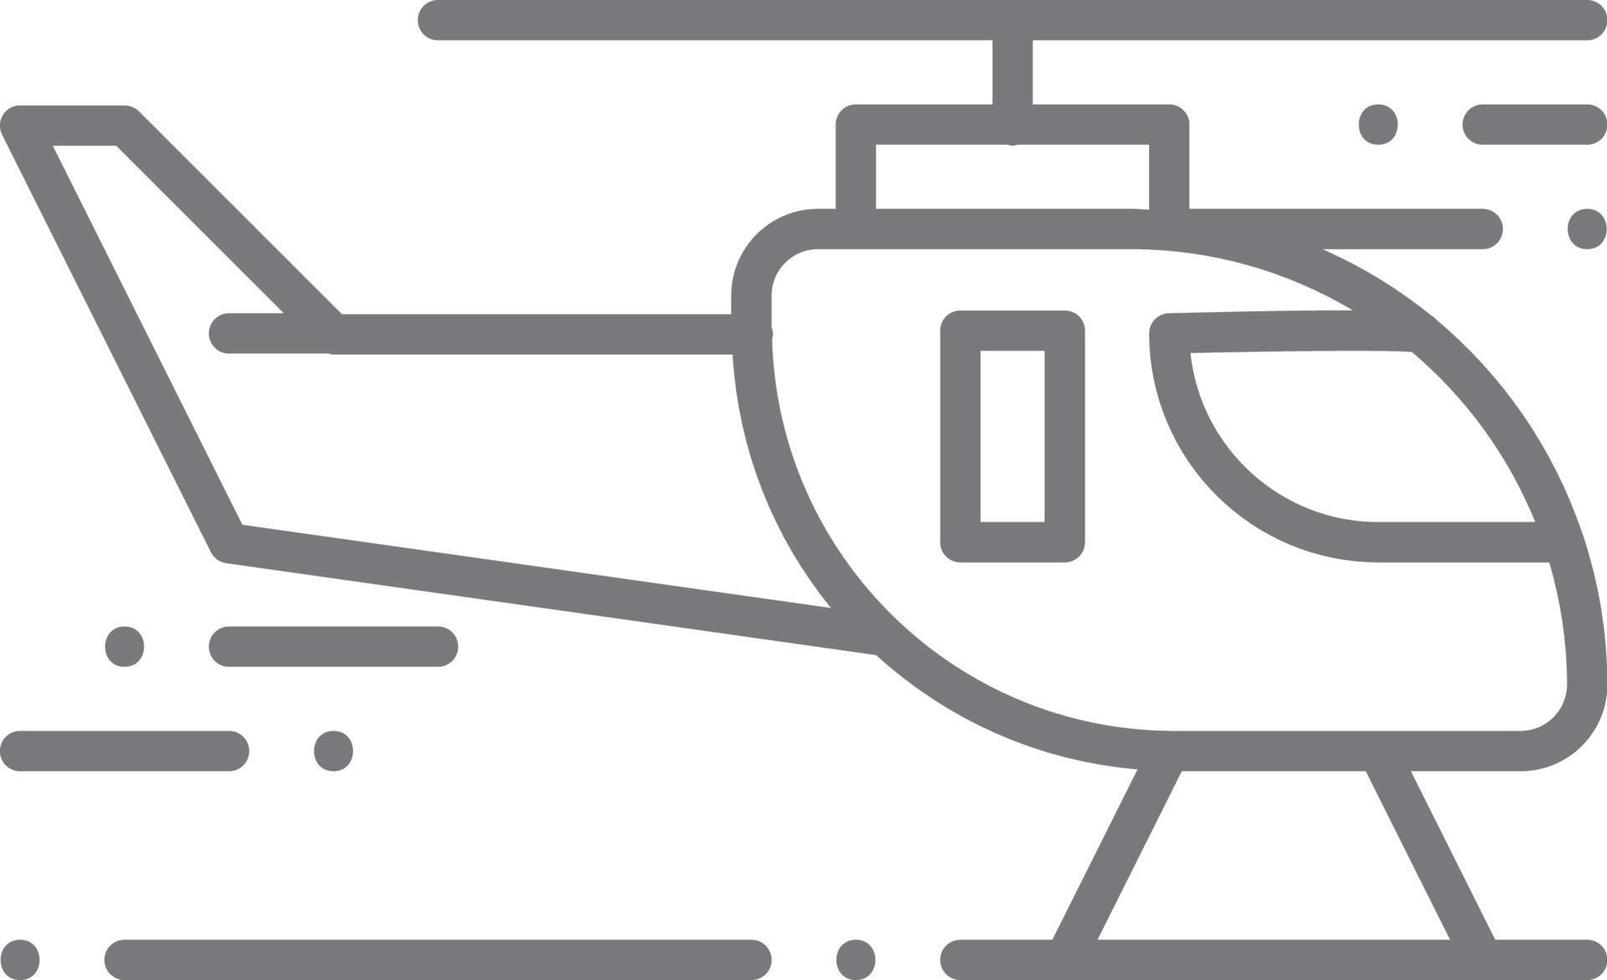 Hubschrauber-Transport-Symbol Menschen-Symbole mit schwarzem Umriss-Stil. fahrzeug, symbol, transport, linie, umriss, reise, automobil, bearbeitbar, piktogramm, isoliert, flach. Vektor-Illustration vektor